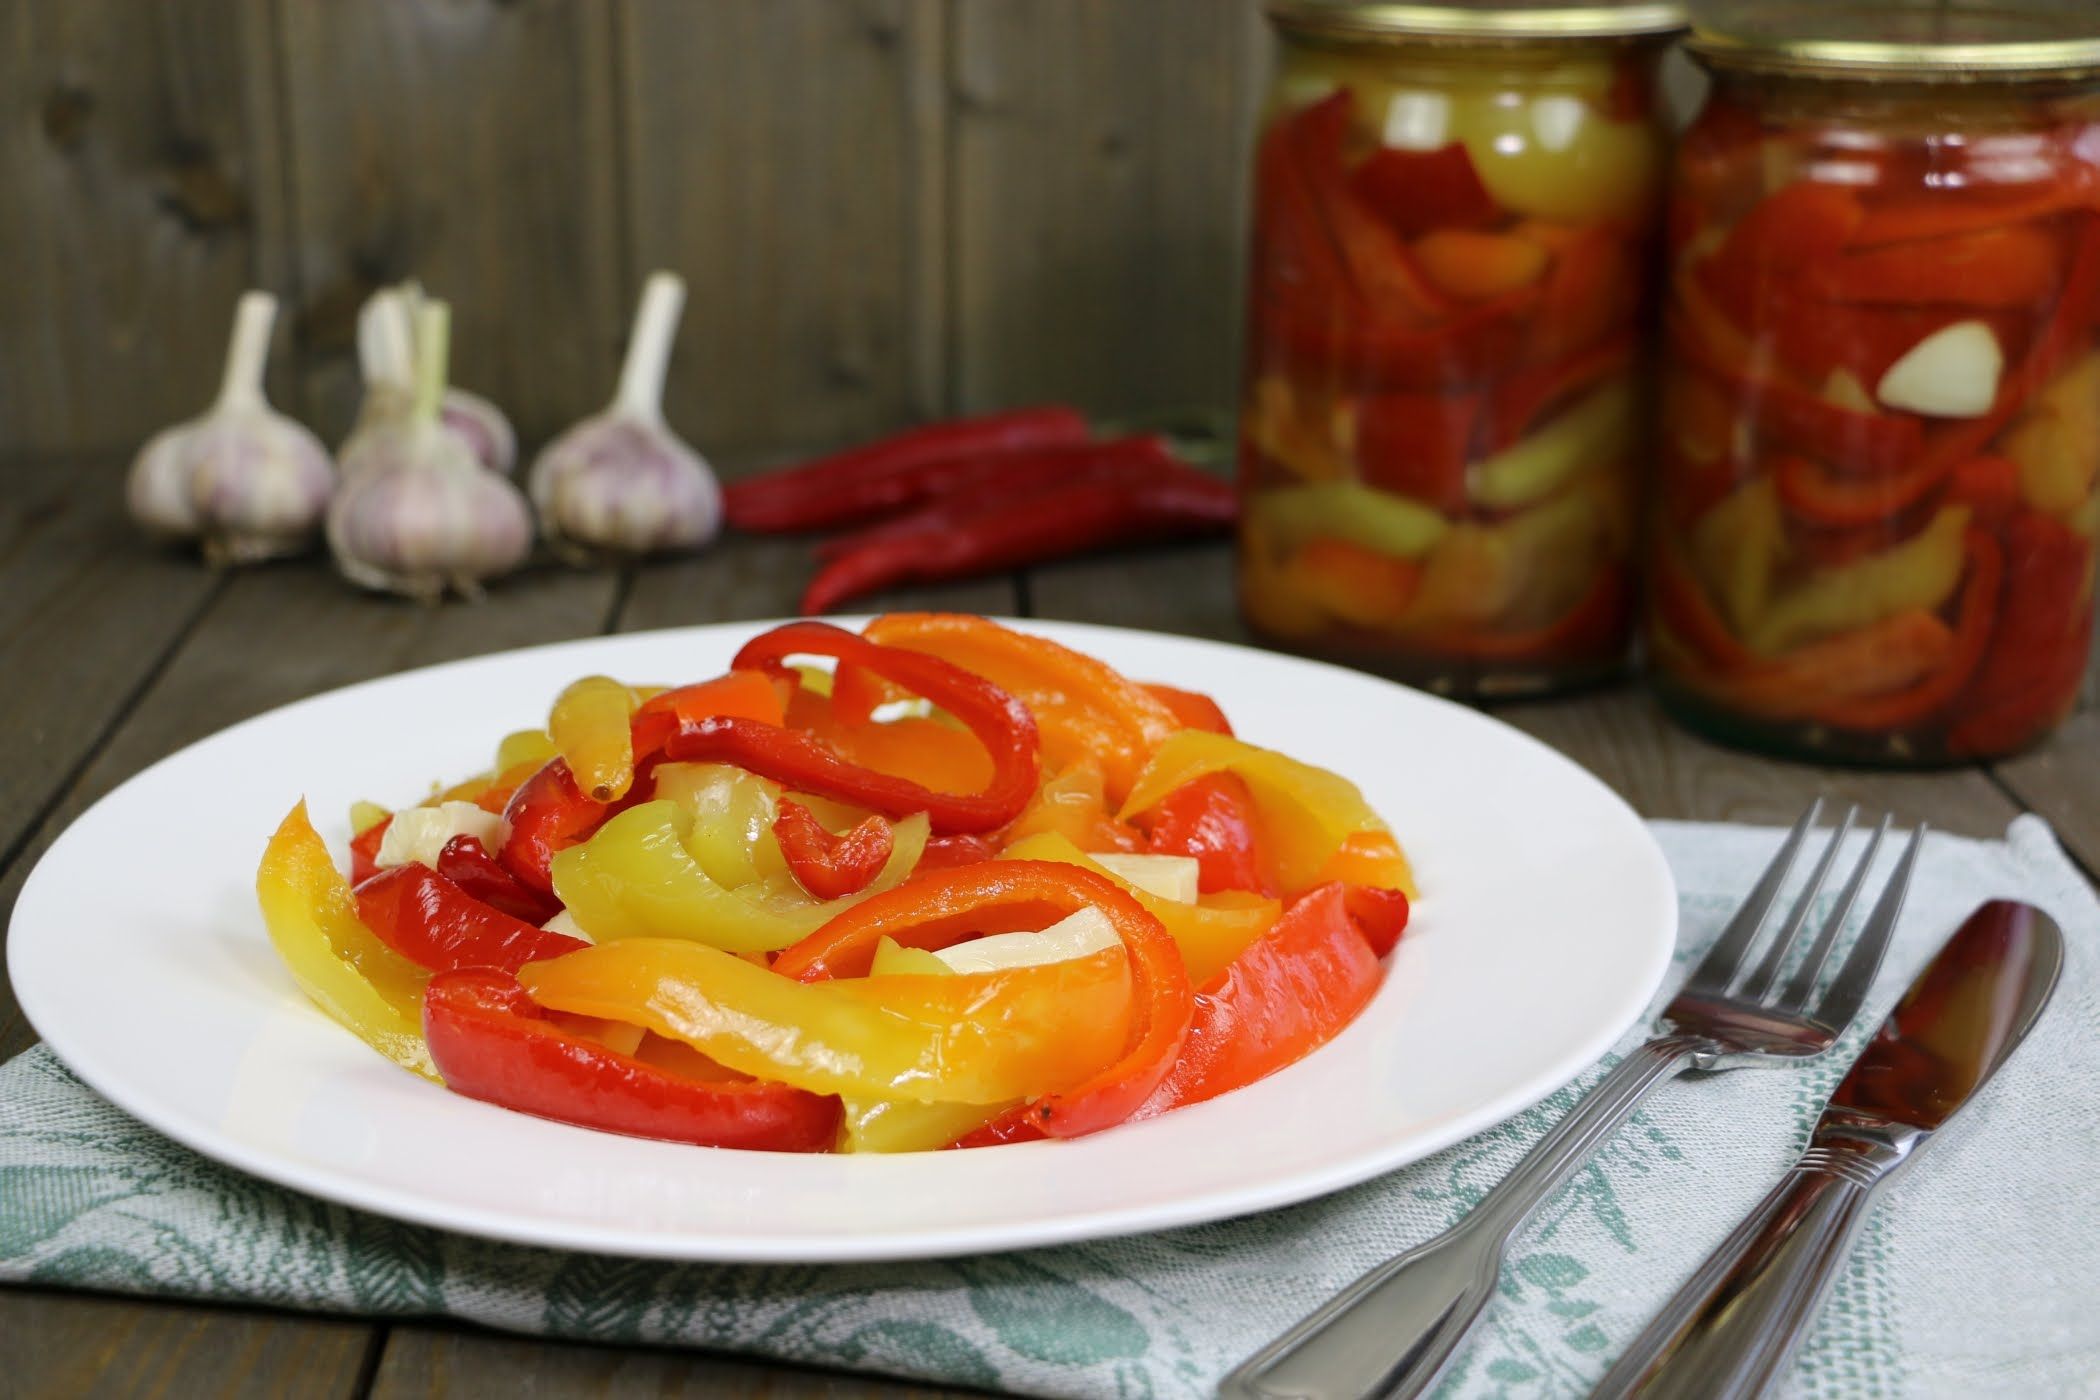 Как приготовить перец в томатном соусе на зиму по пошаговому рецепту с фото